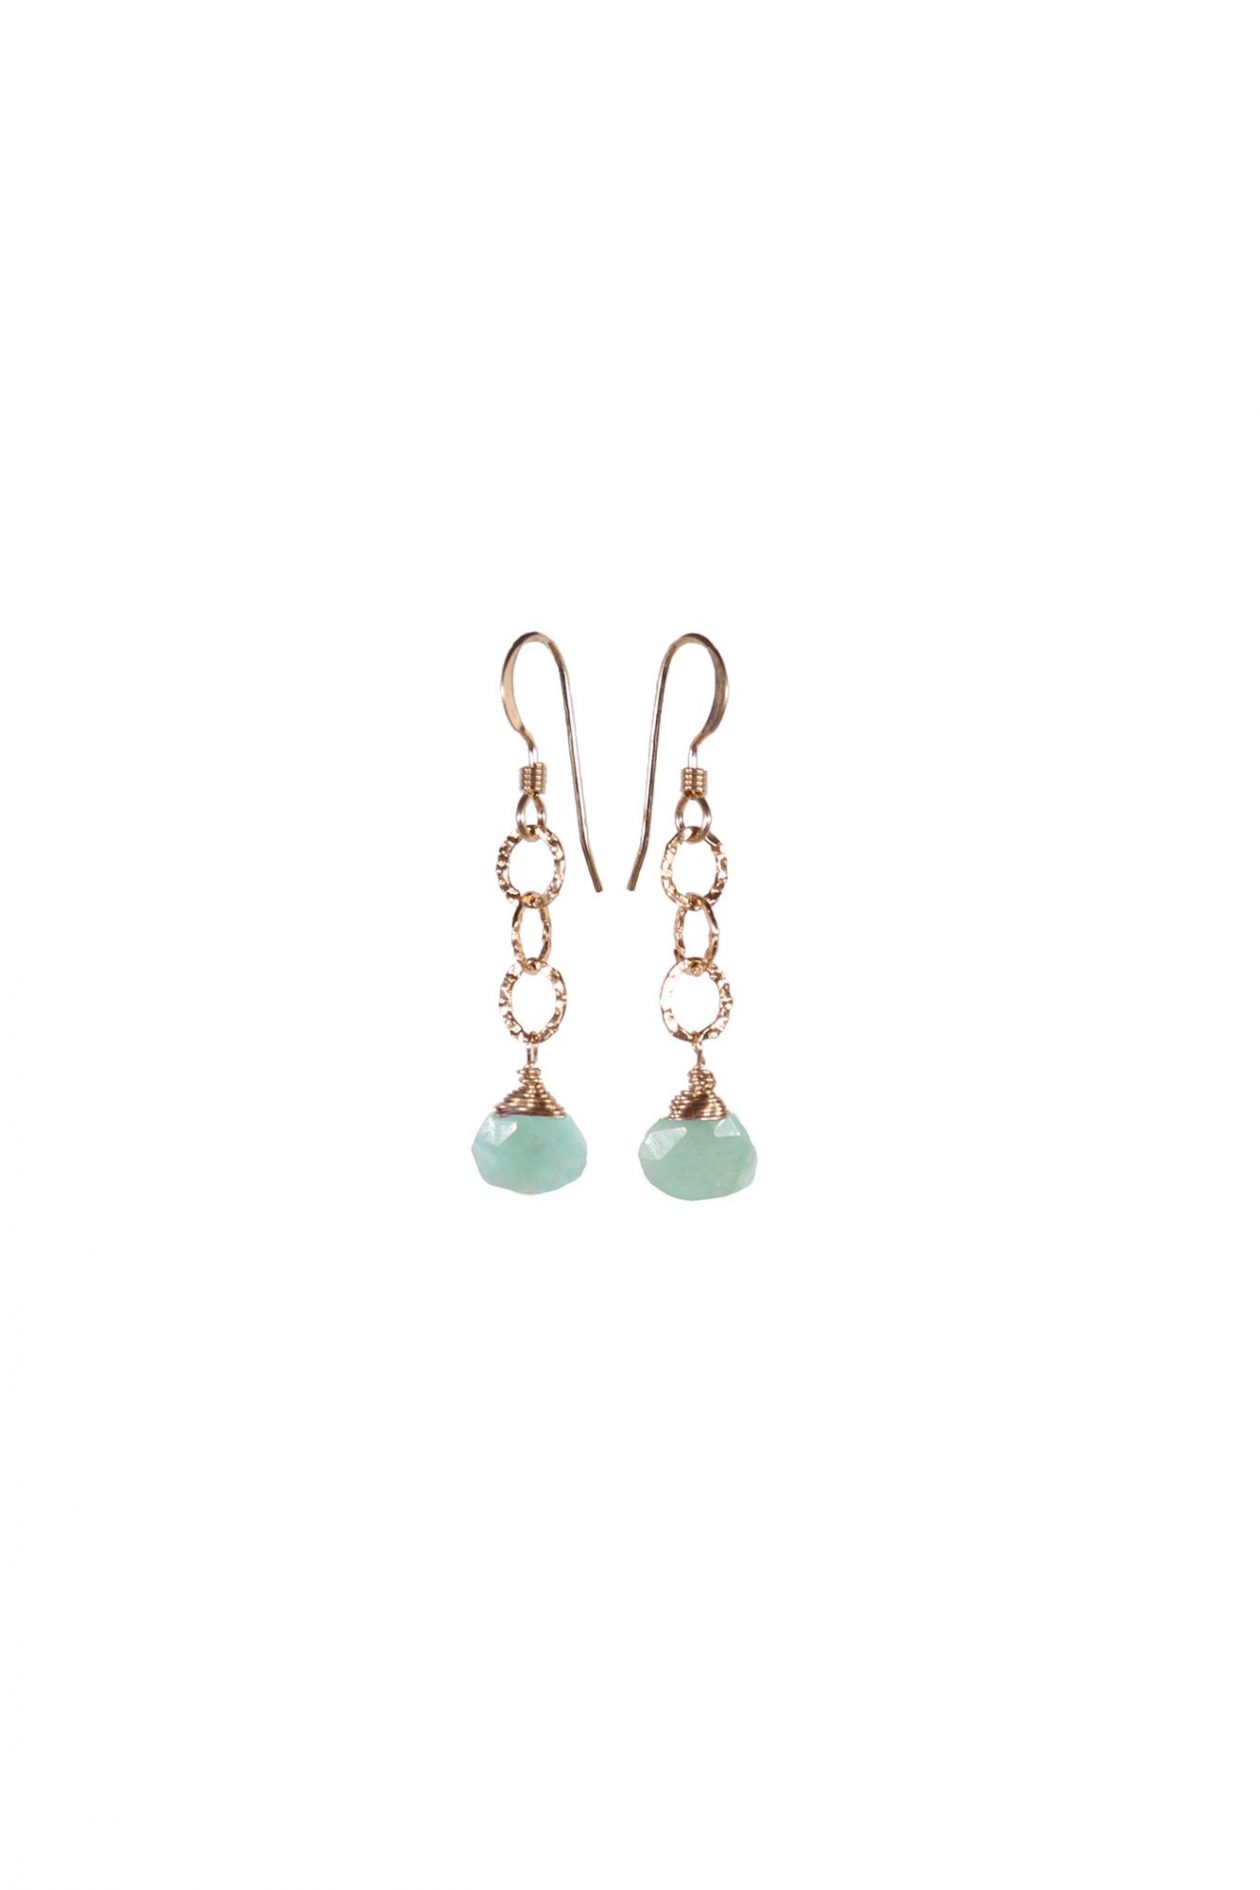 JK Designs 3 Links with Gemstones Earrings